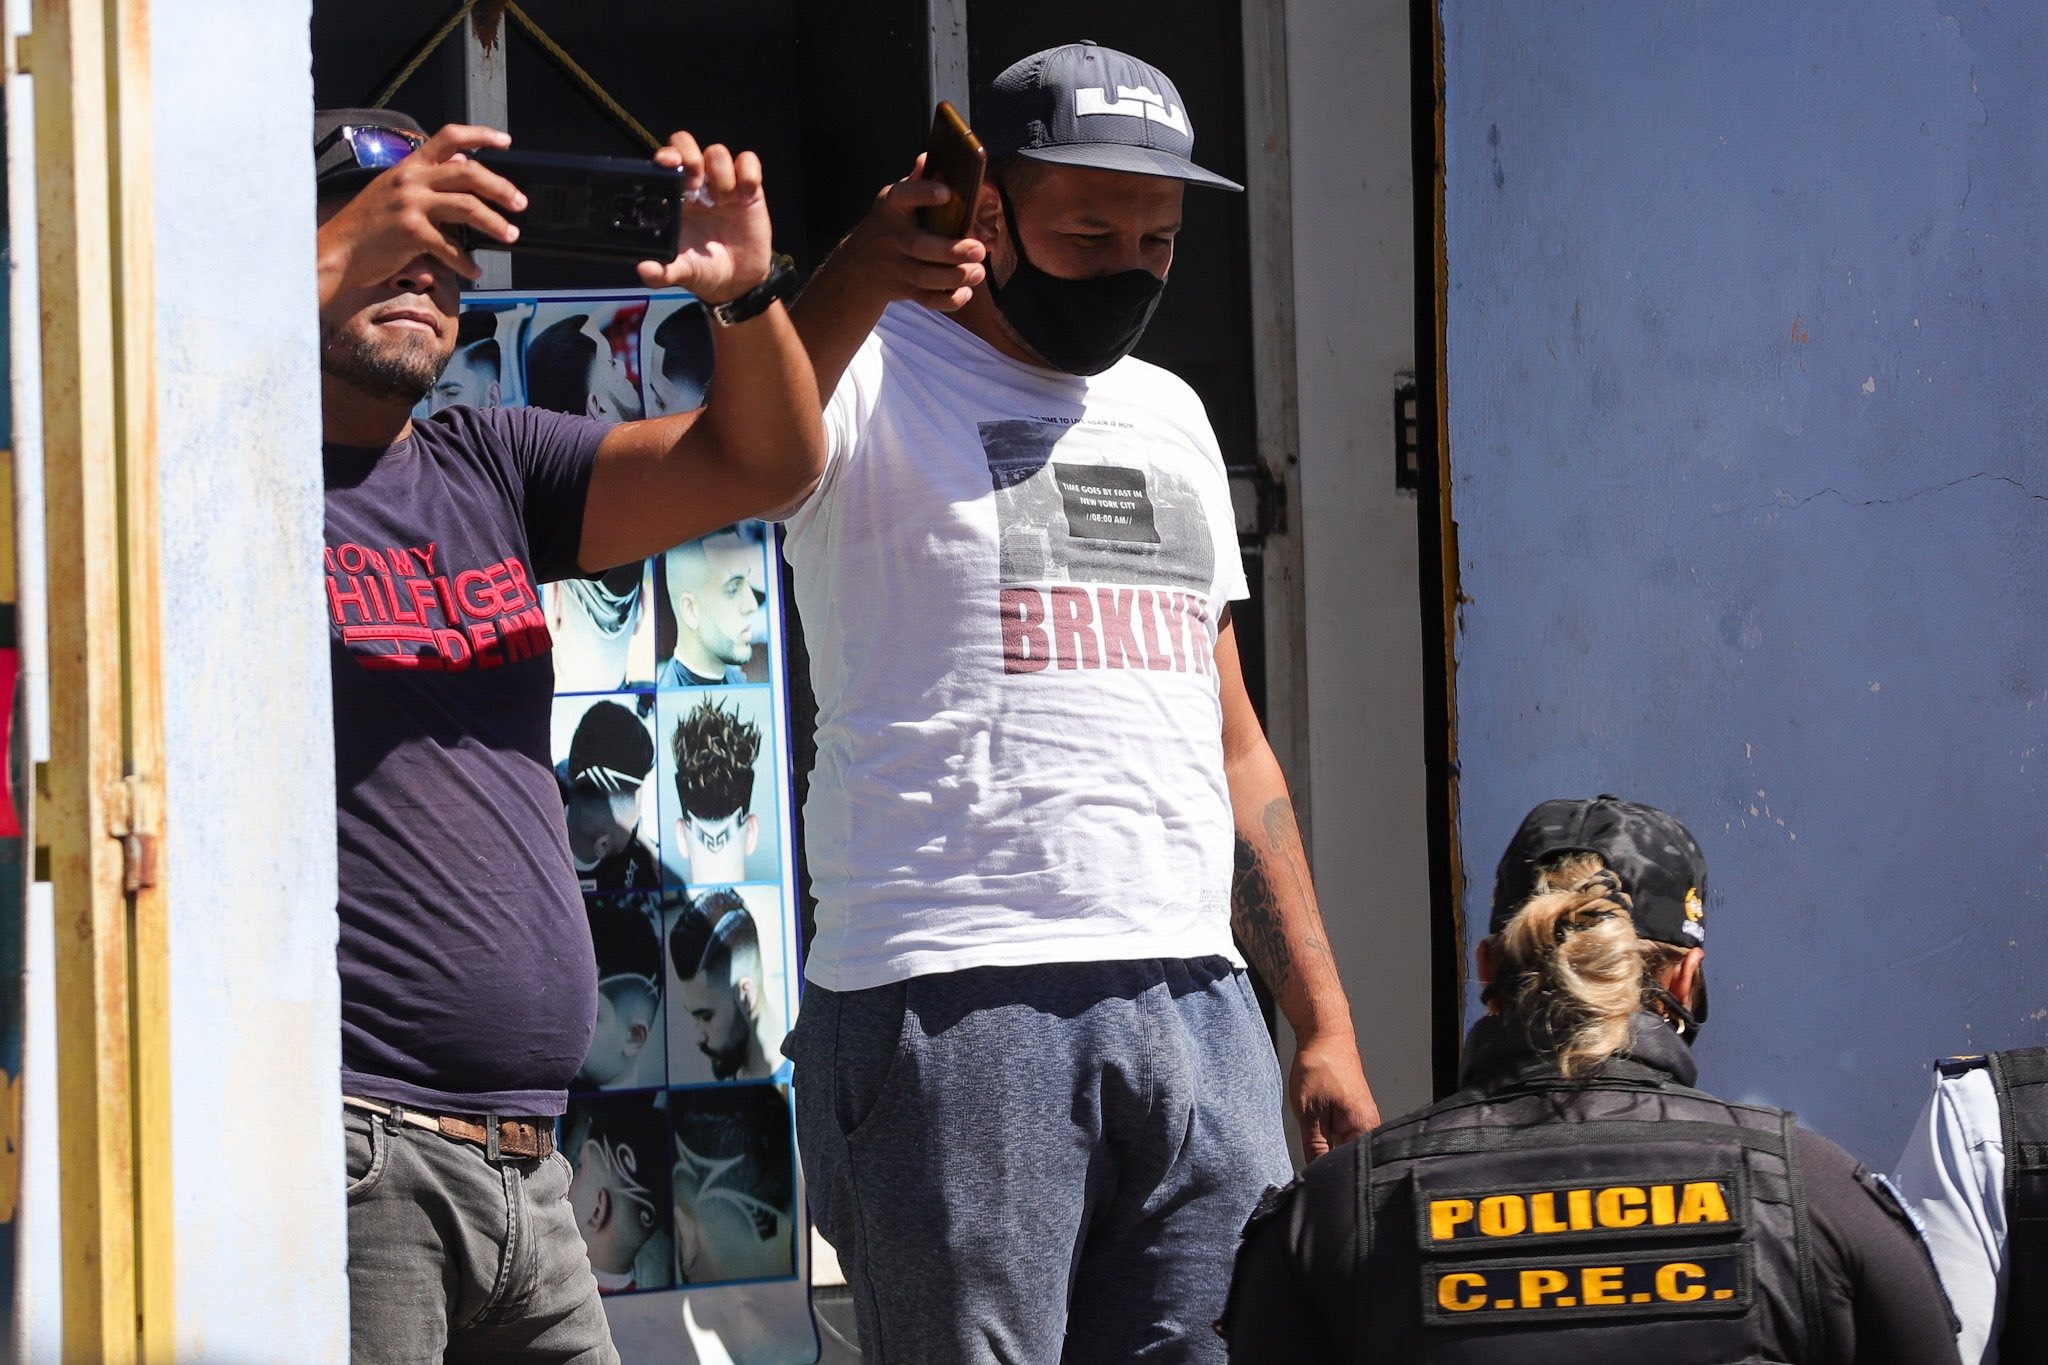 ¡IDENTÍFICALOS! Esbirros del régimen persiguieron a Guaidó durante su visita a Carabobo (FOTOS)